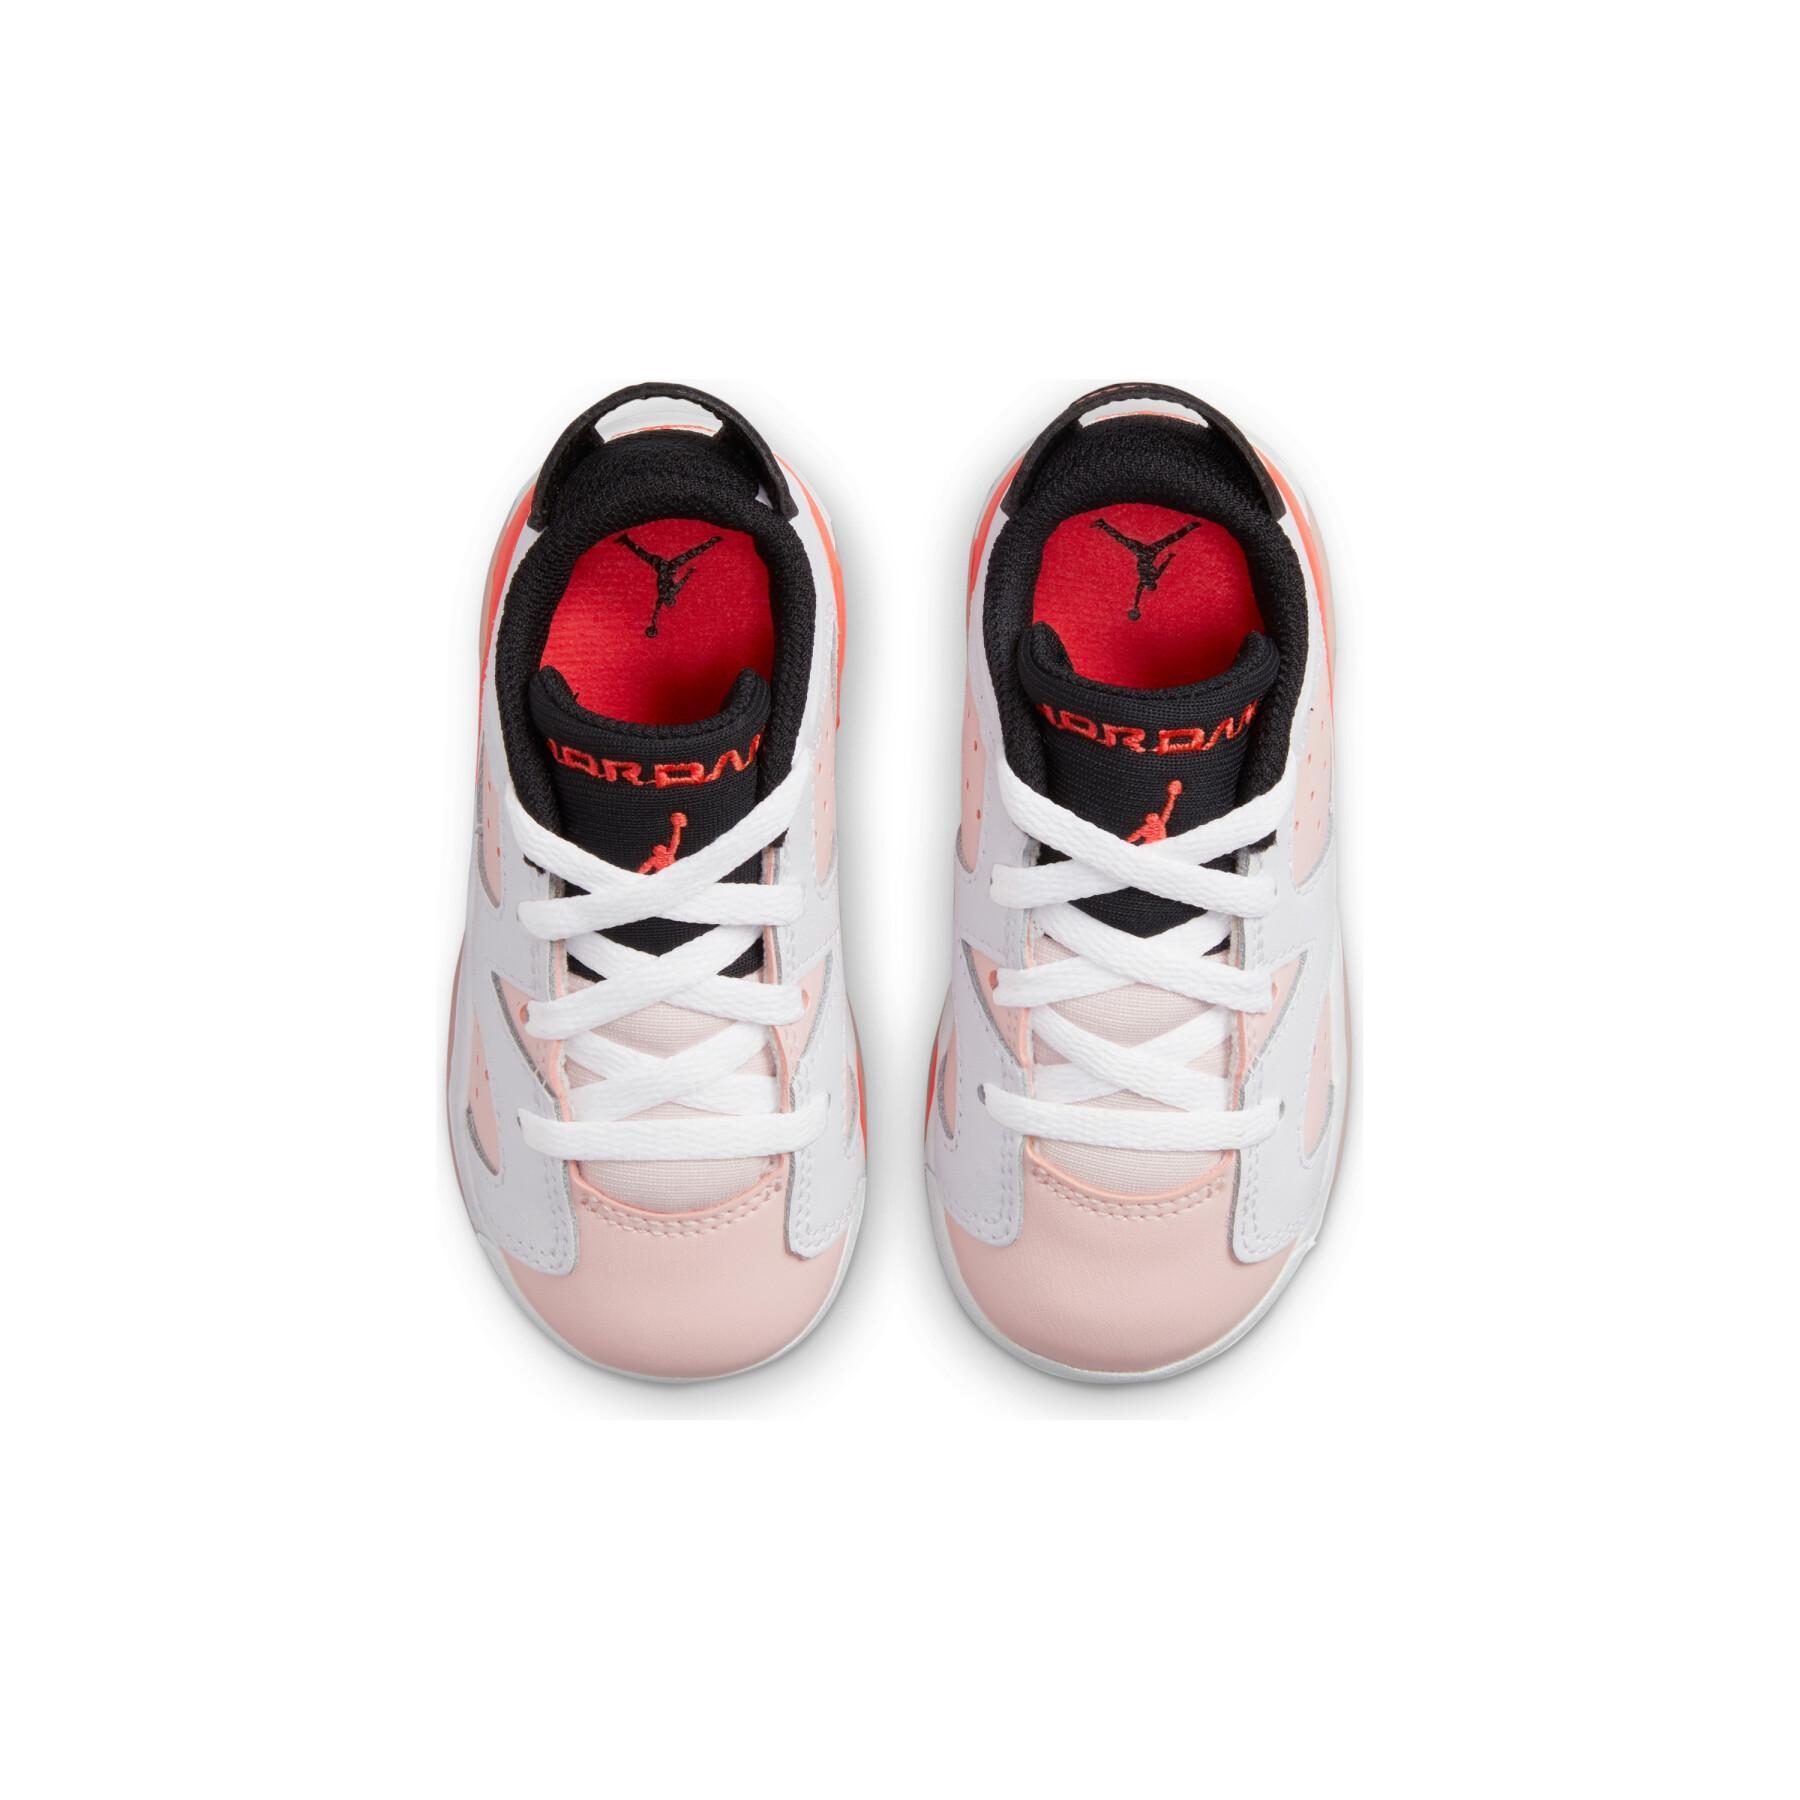 Allenatori per bambini Nike Jordan 6 Retro Low (TD)